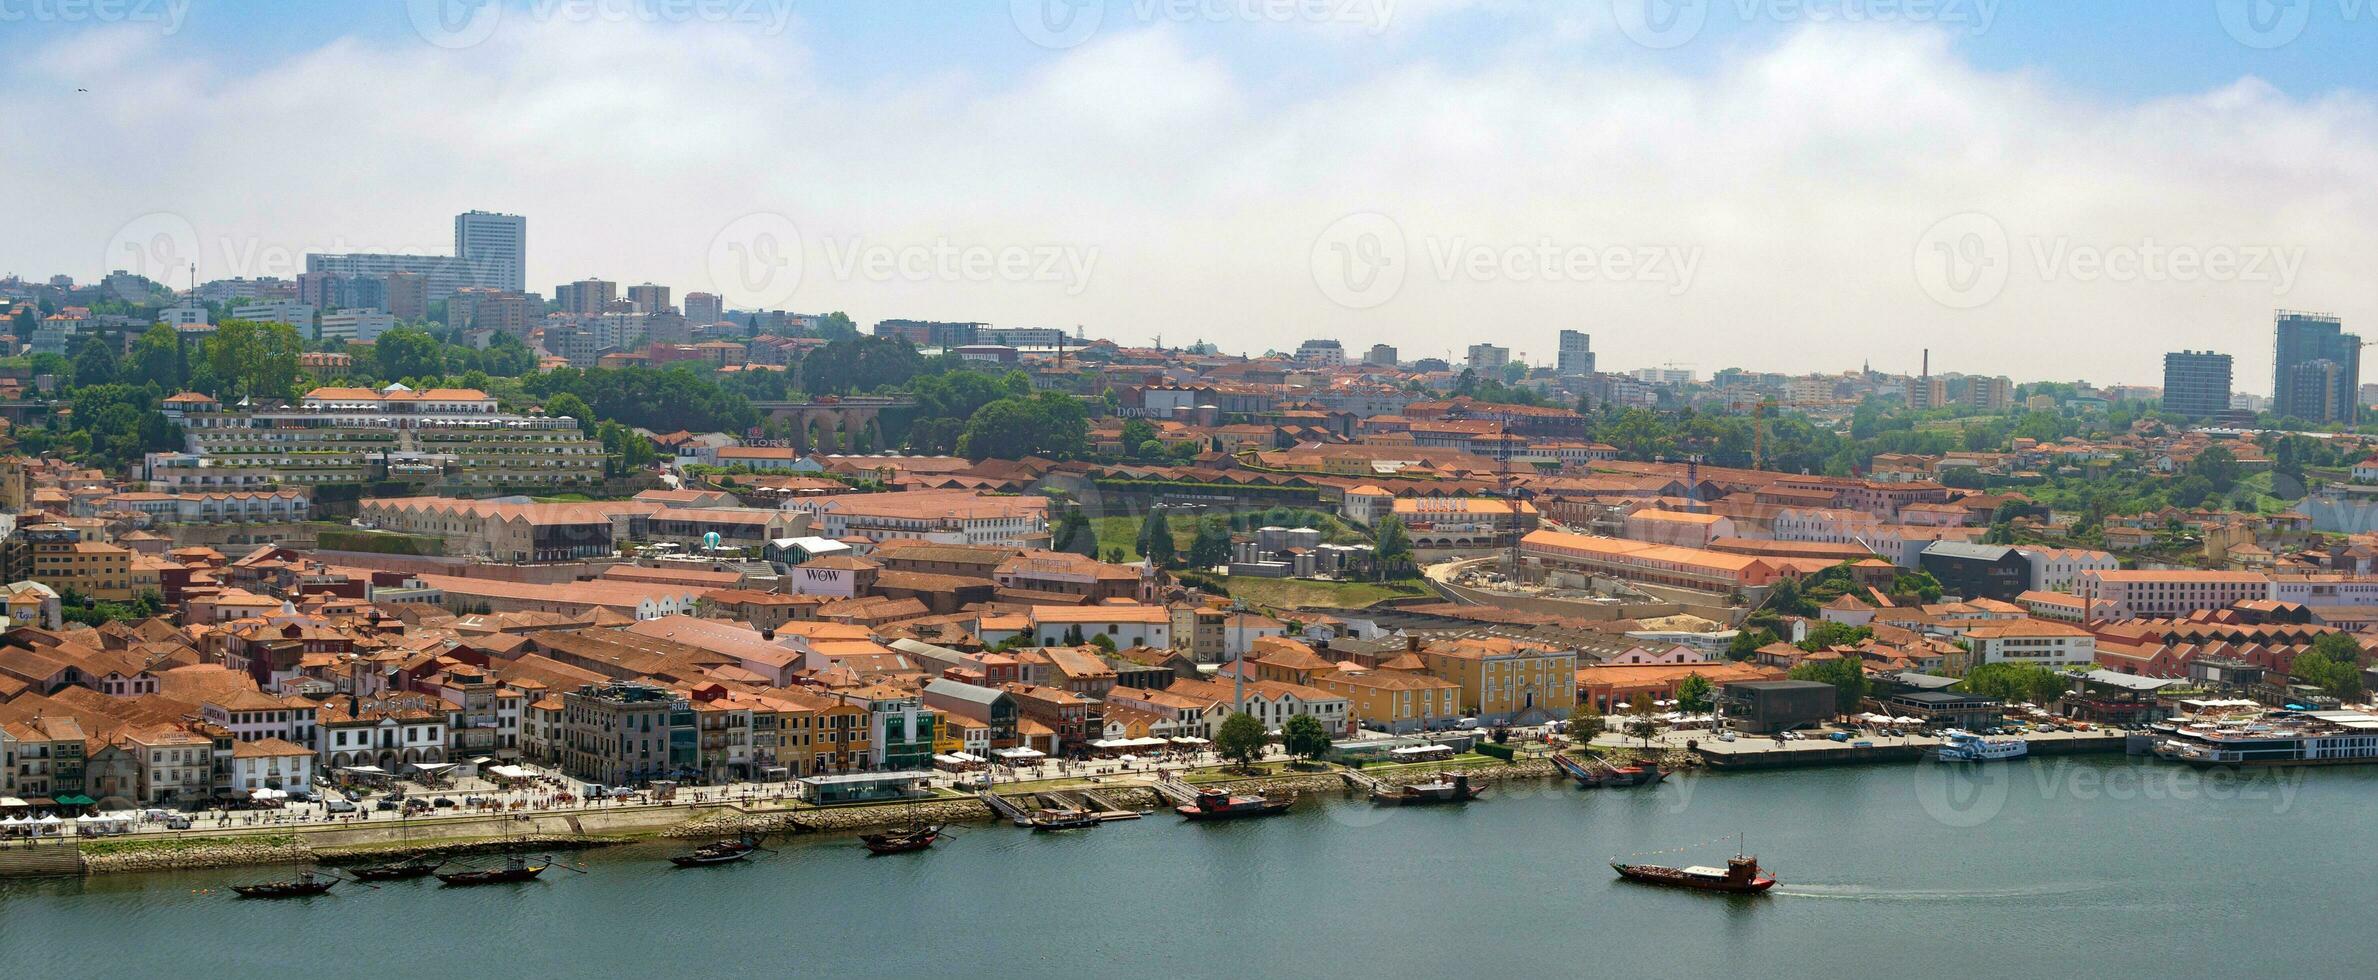 porto berühmt historisch Stadt, Portugal. die Architektur von alt Stadt. Reise zu Ribeira und Douro Fluss. foto